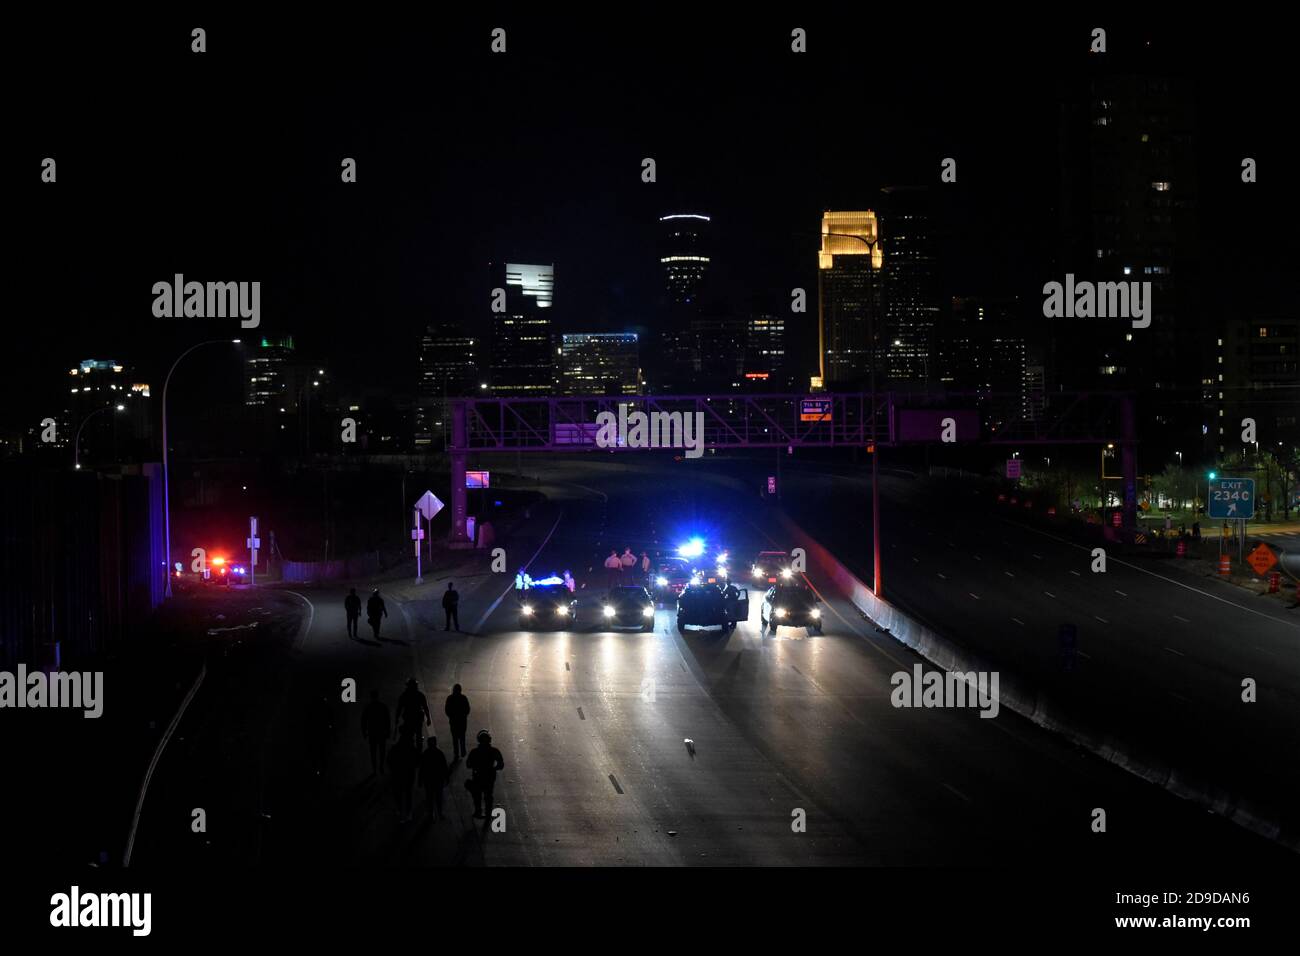 Los manifestantes son vistos escoltados por la policía fuera de la carretera I-94 después de las elecciones presidenciales de 2020 en Minneapolis, Minnesota, EE.UU. El 4 de noviembre de 2020. REUTERS/Nicholas Pfosi Foto de stock